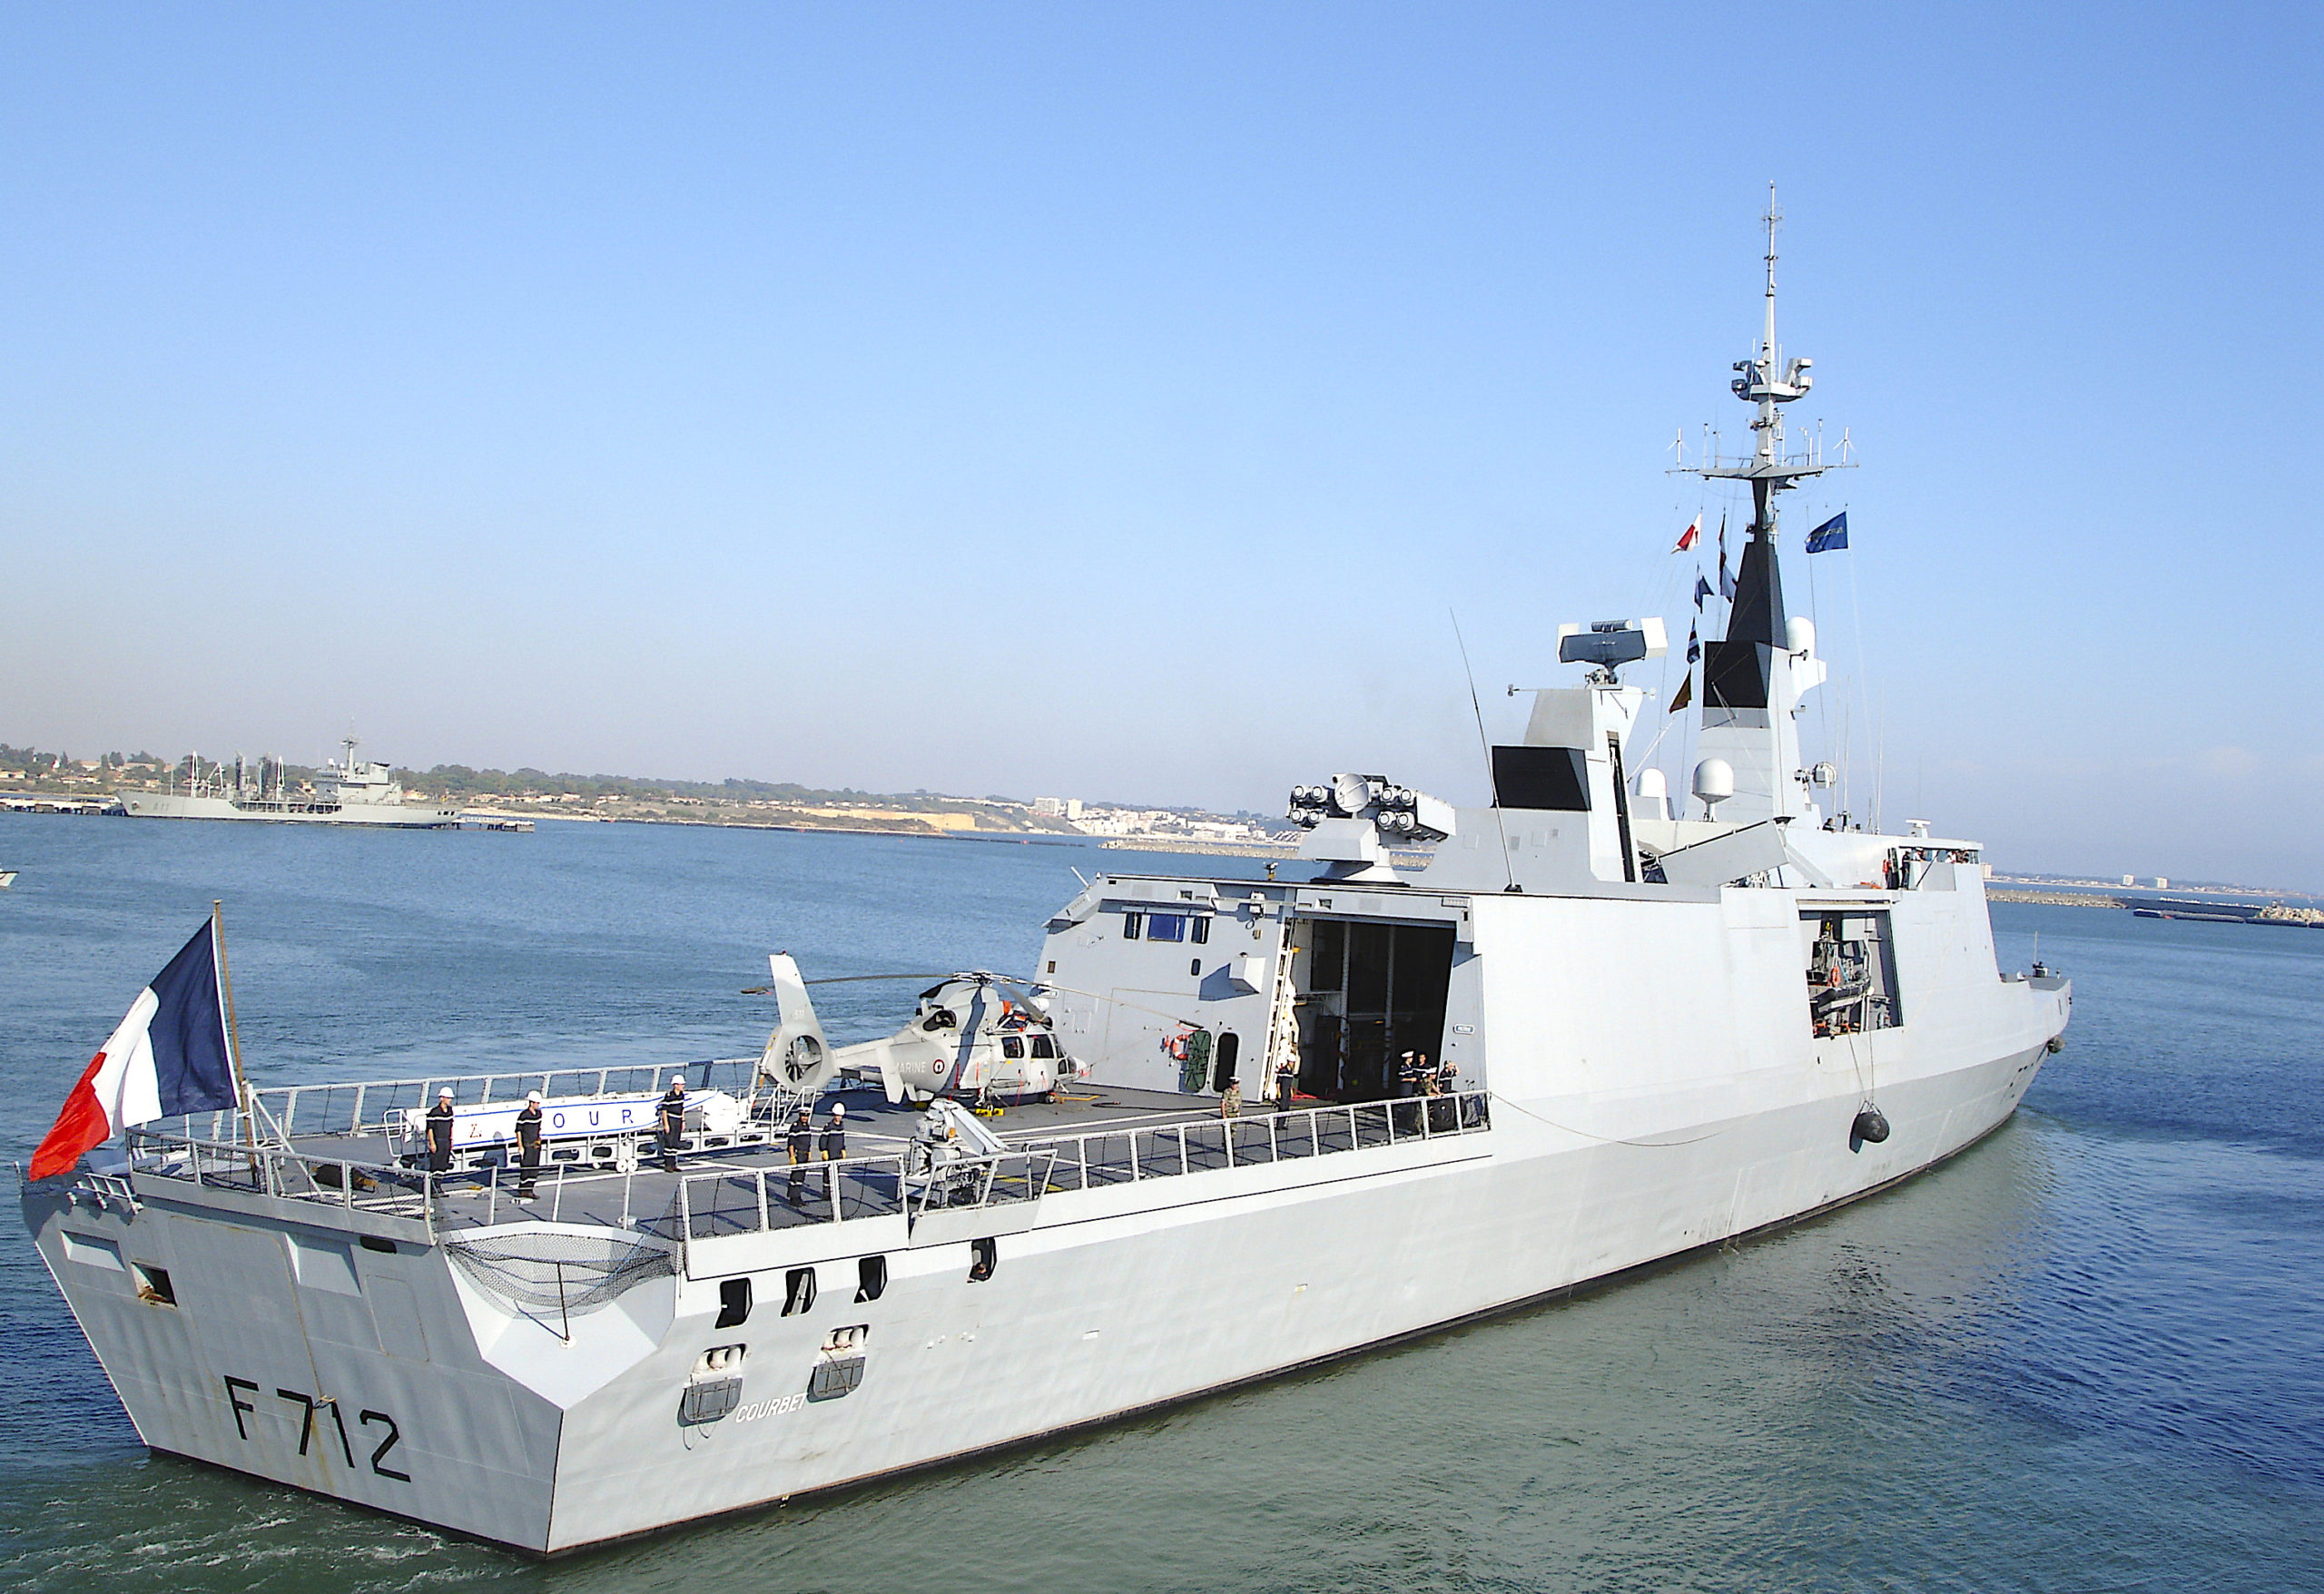 Γαλλία: Αποχώρηση από ΝΑΤΟϊκη επιχείρηση στην Ανατολική Μεσόγειο